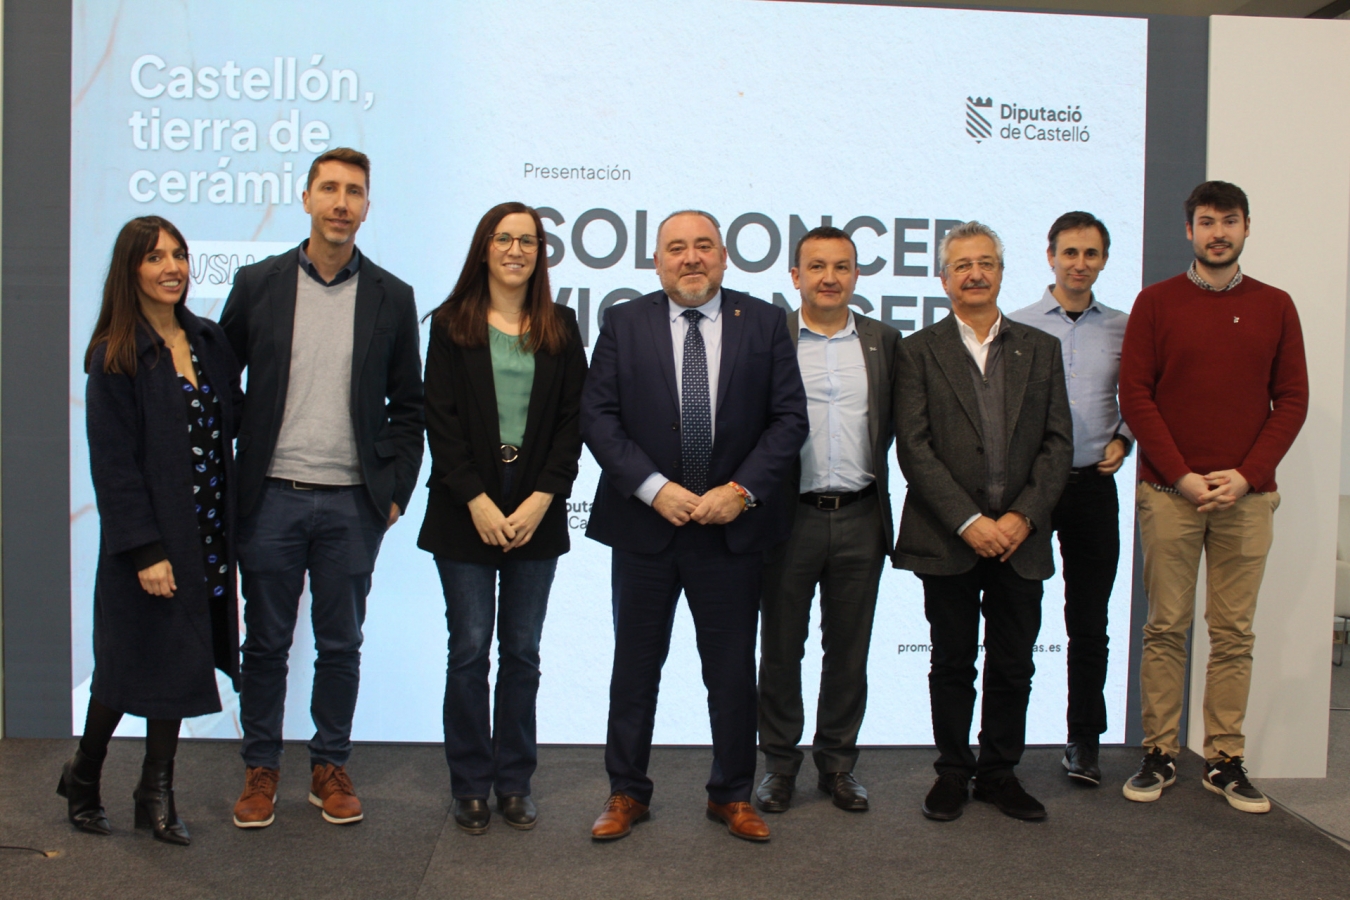 La Diputación de Castellón y el ITC amplían la herramienta Solconcer para fomentar el conocimiento técnico sobre soluciones constructivas cerámicas